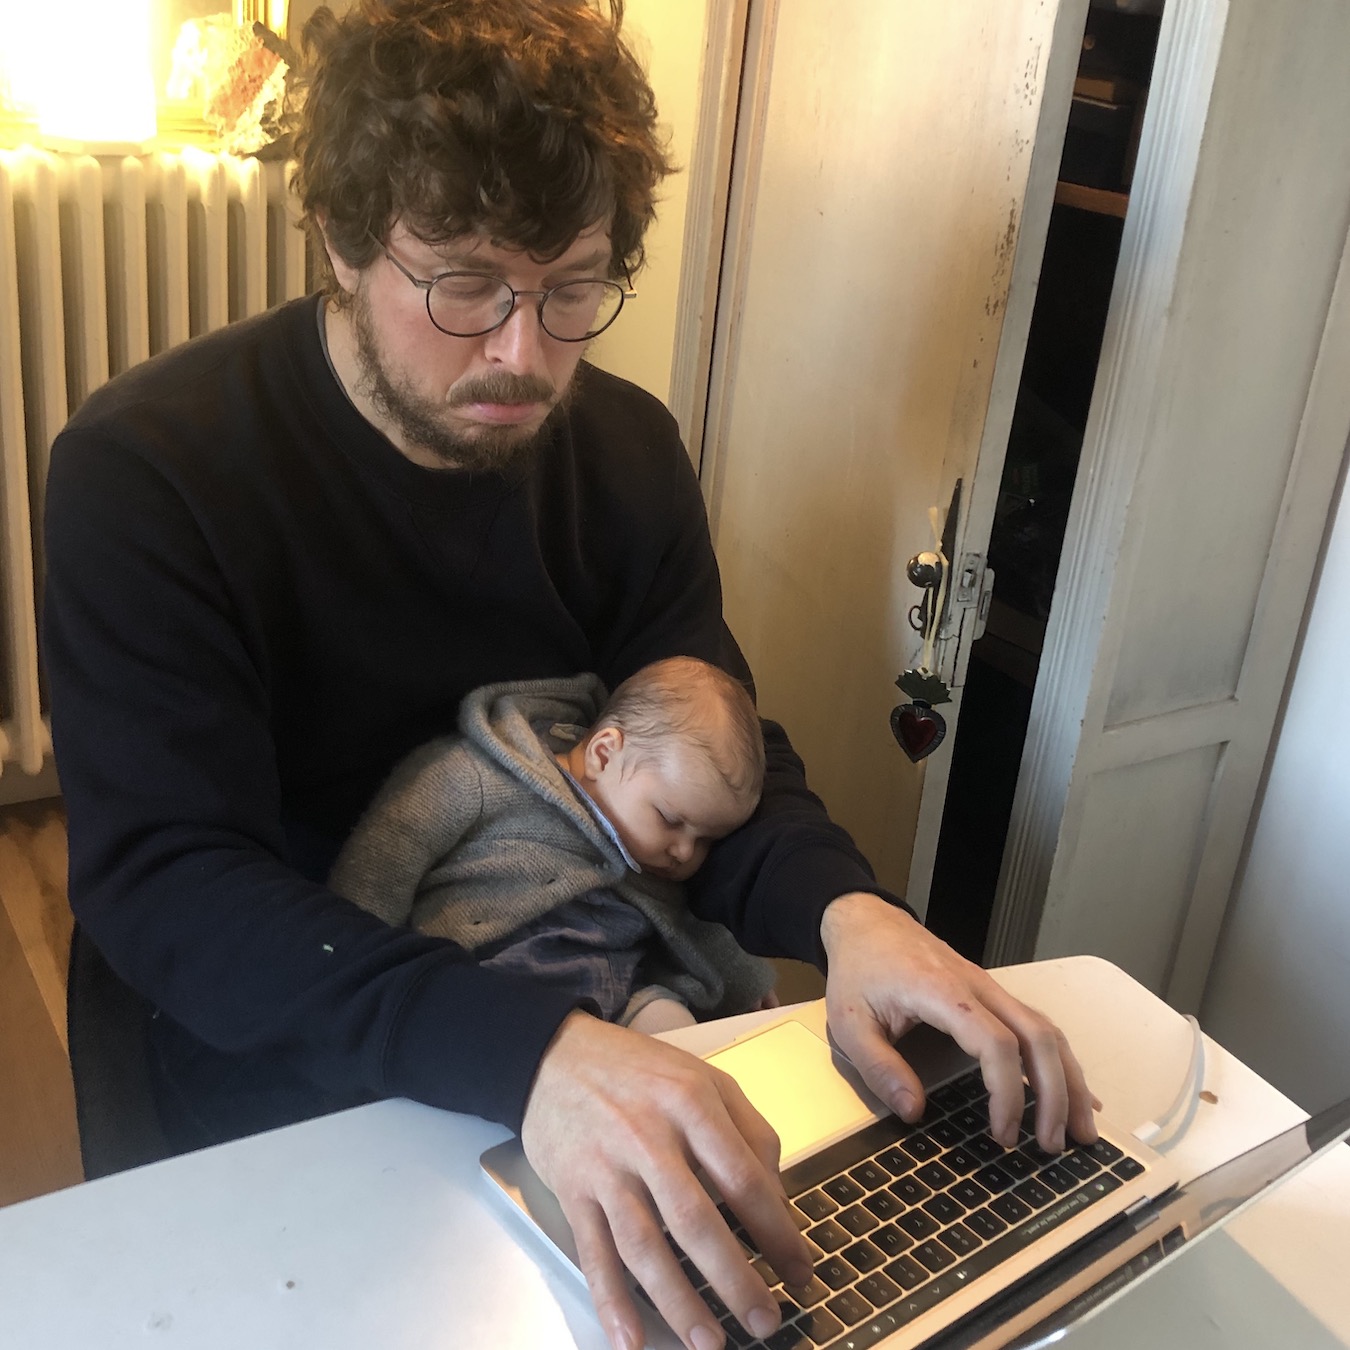 Télétravail with a baby